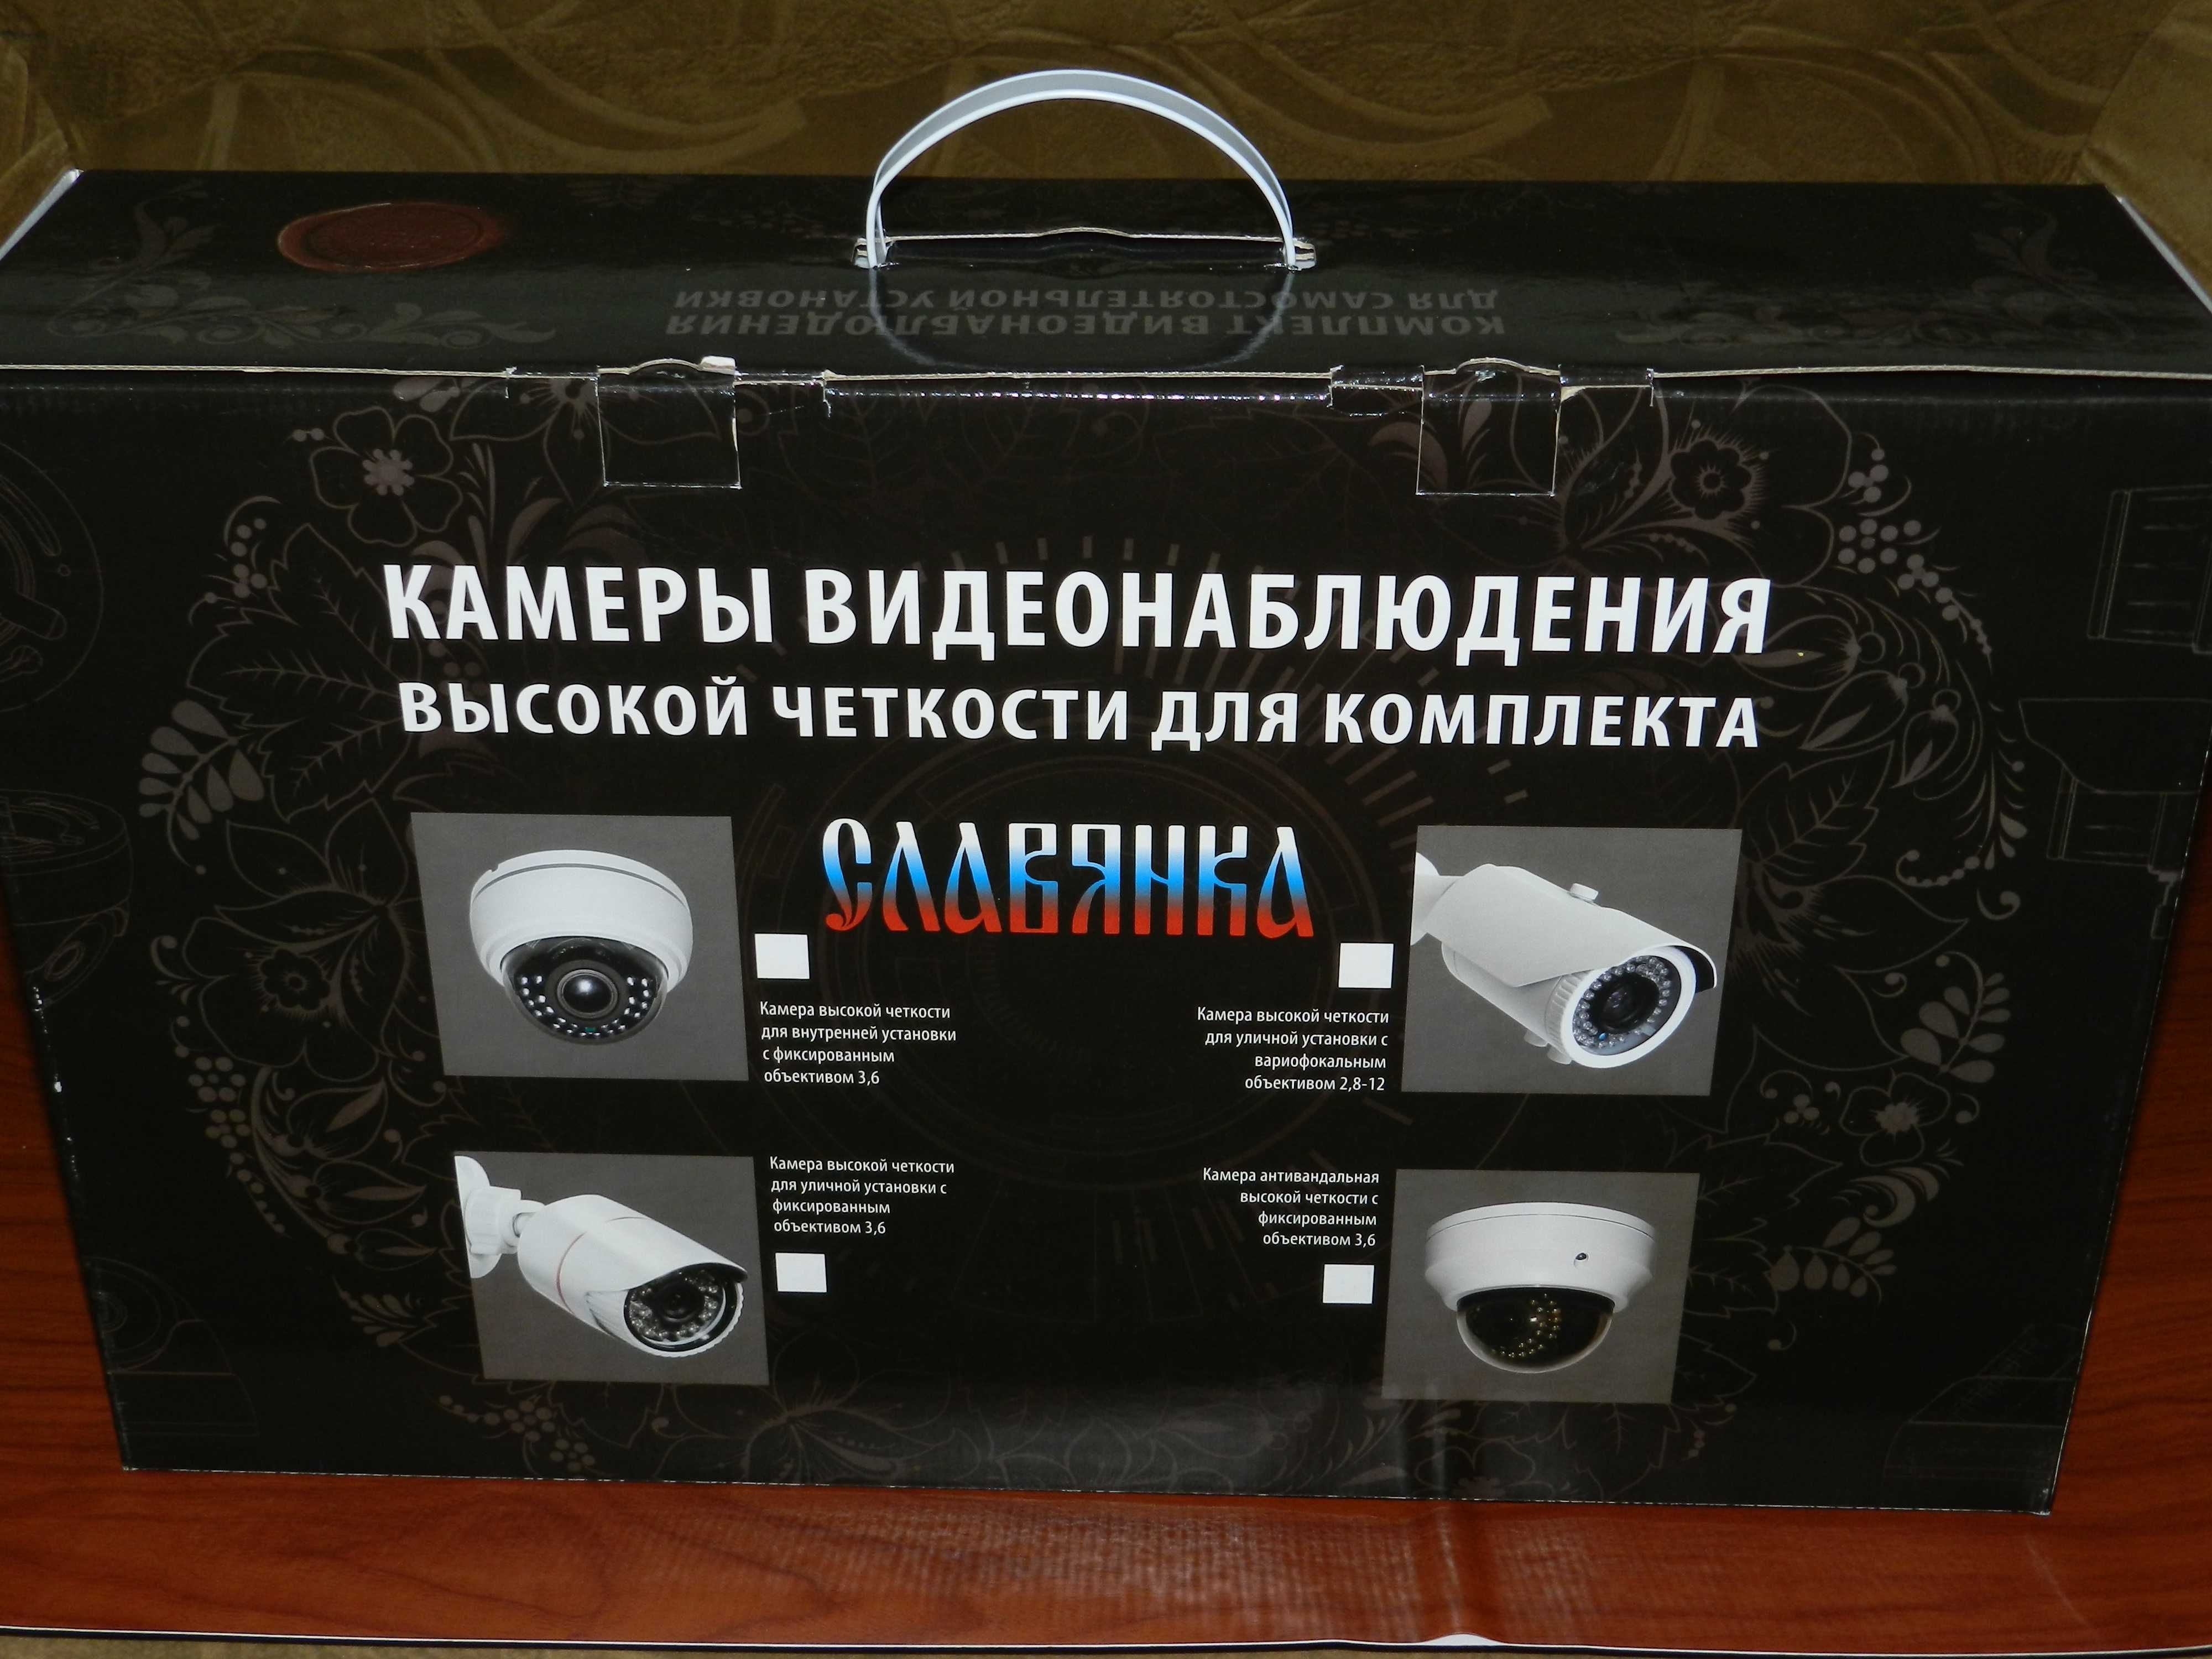 Распродажа оборудования для видеонаблюдения